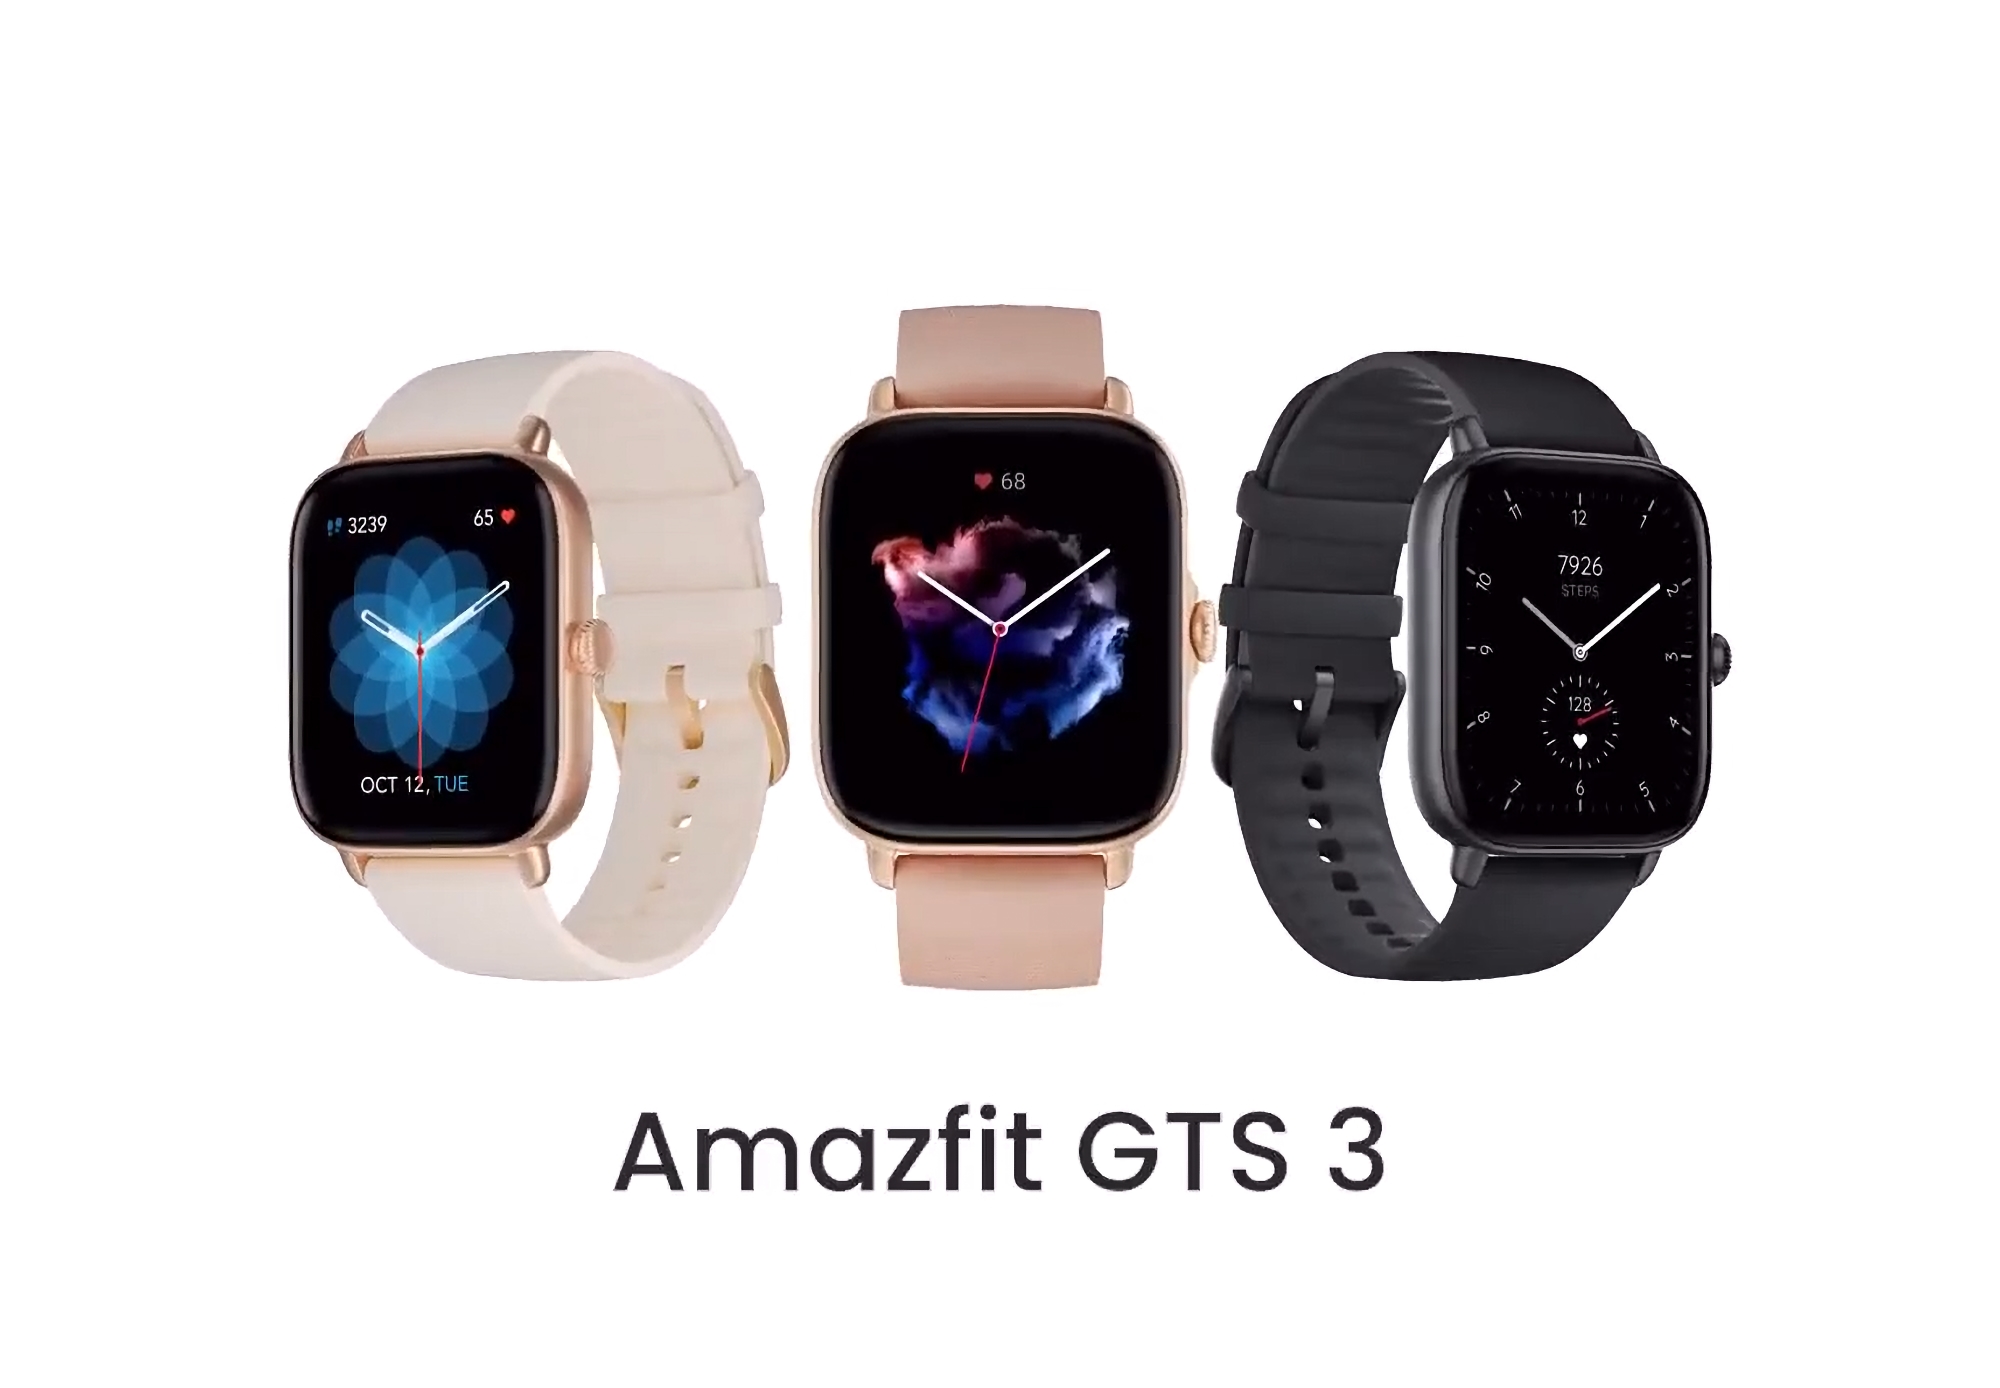 Oferta por tiempo limitado: Amazfit GTS 3 en Amazon con un descuento de 30 dólares